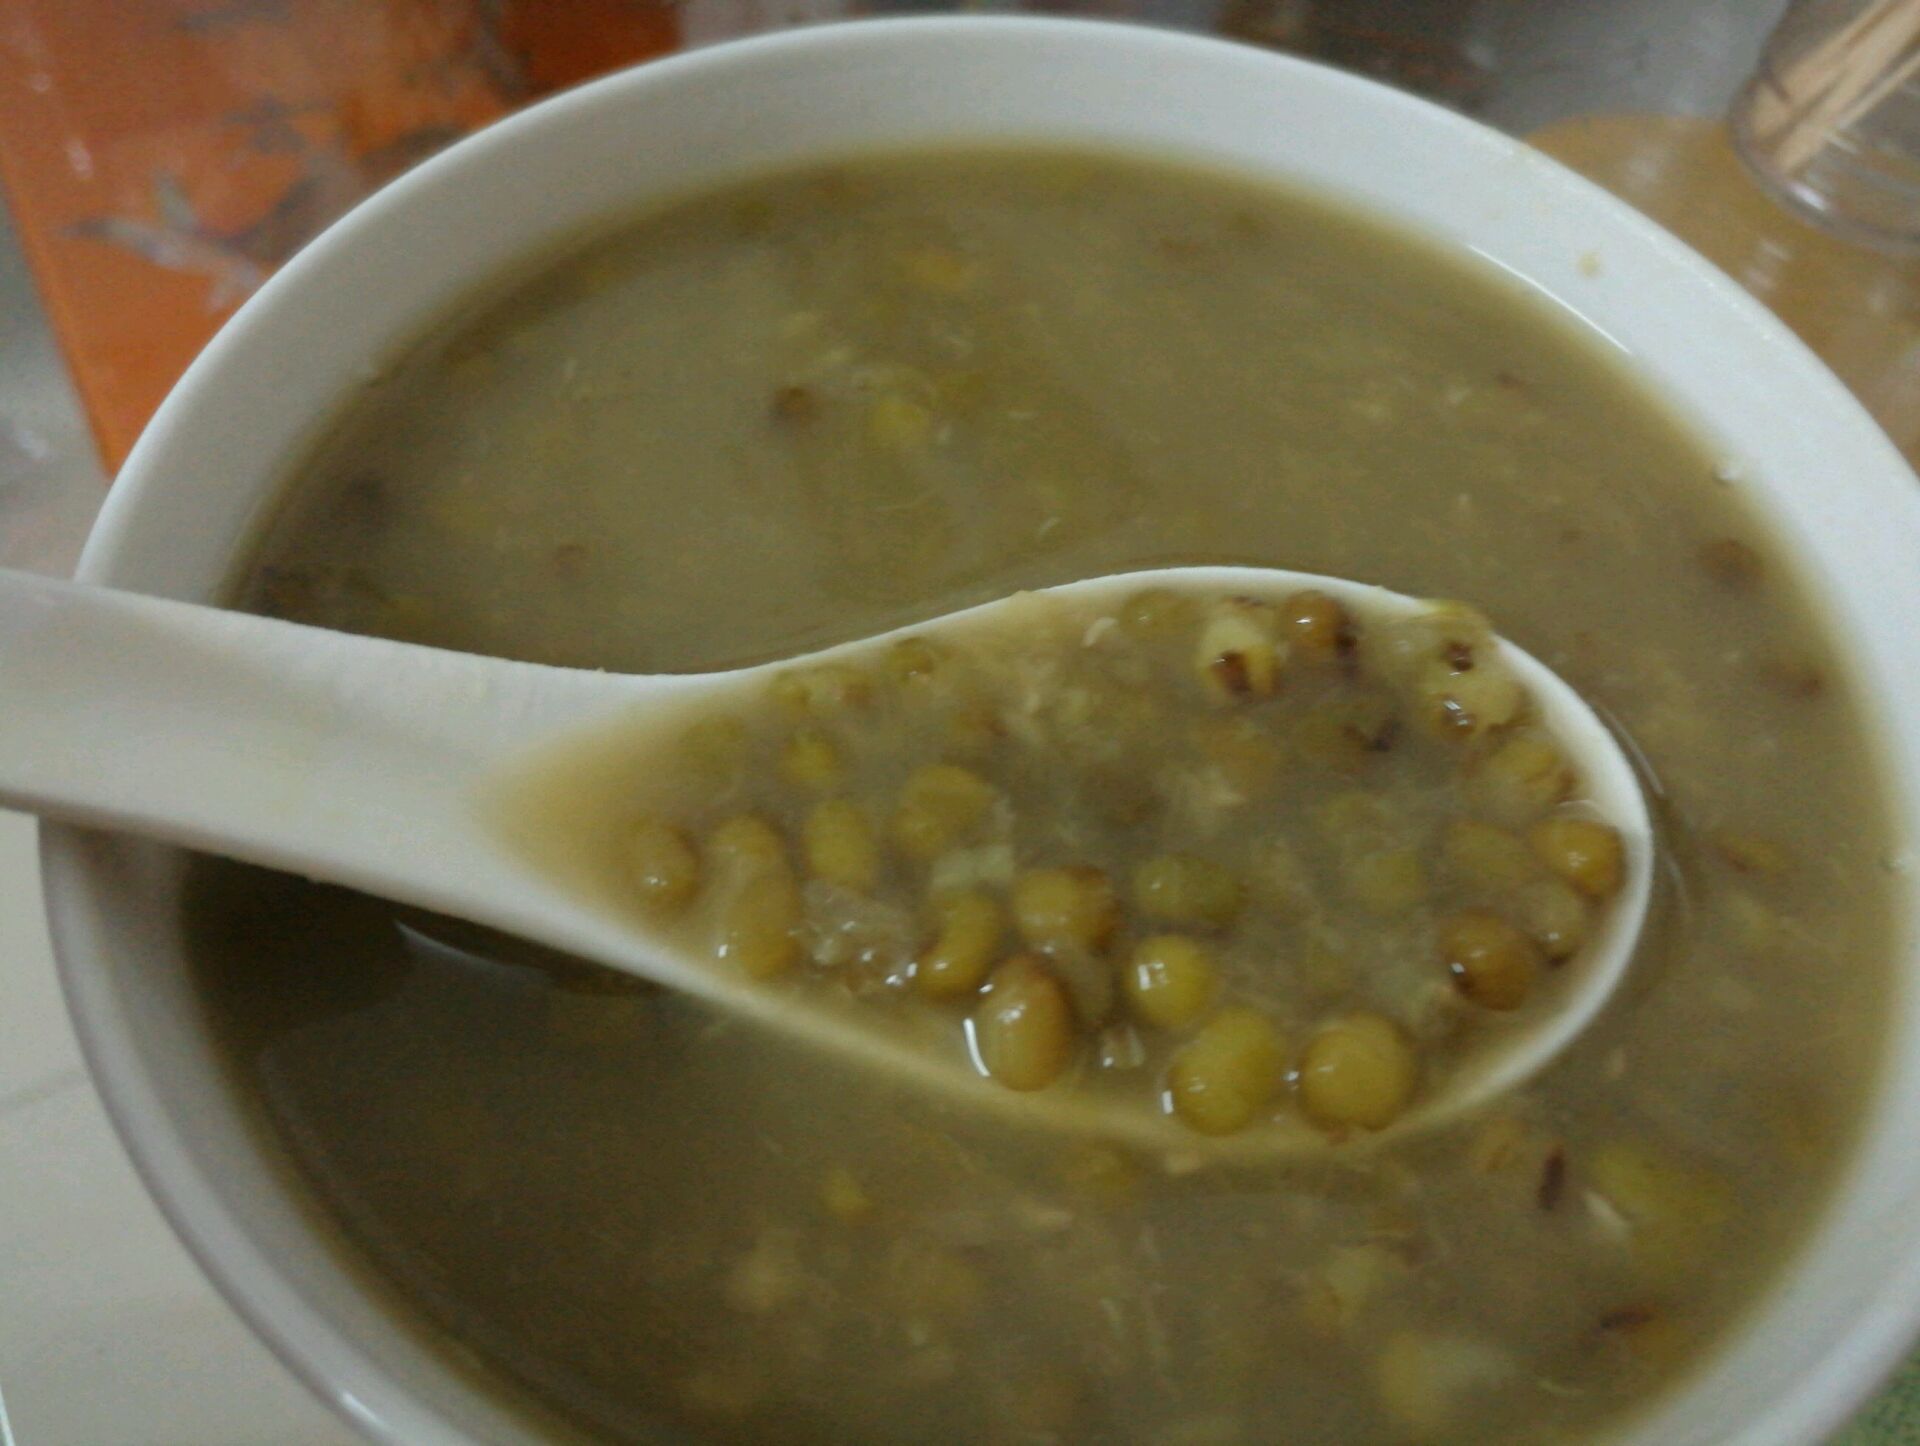 绿豆汤的做法_【图解】绿豆汤怎么做如何做好吃_绿豆汤家常做法大全_小玉的厨房_豆果美食